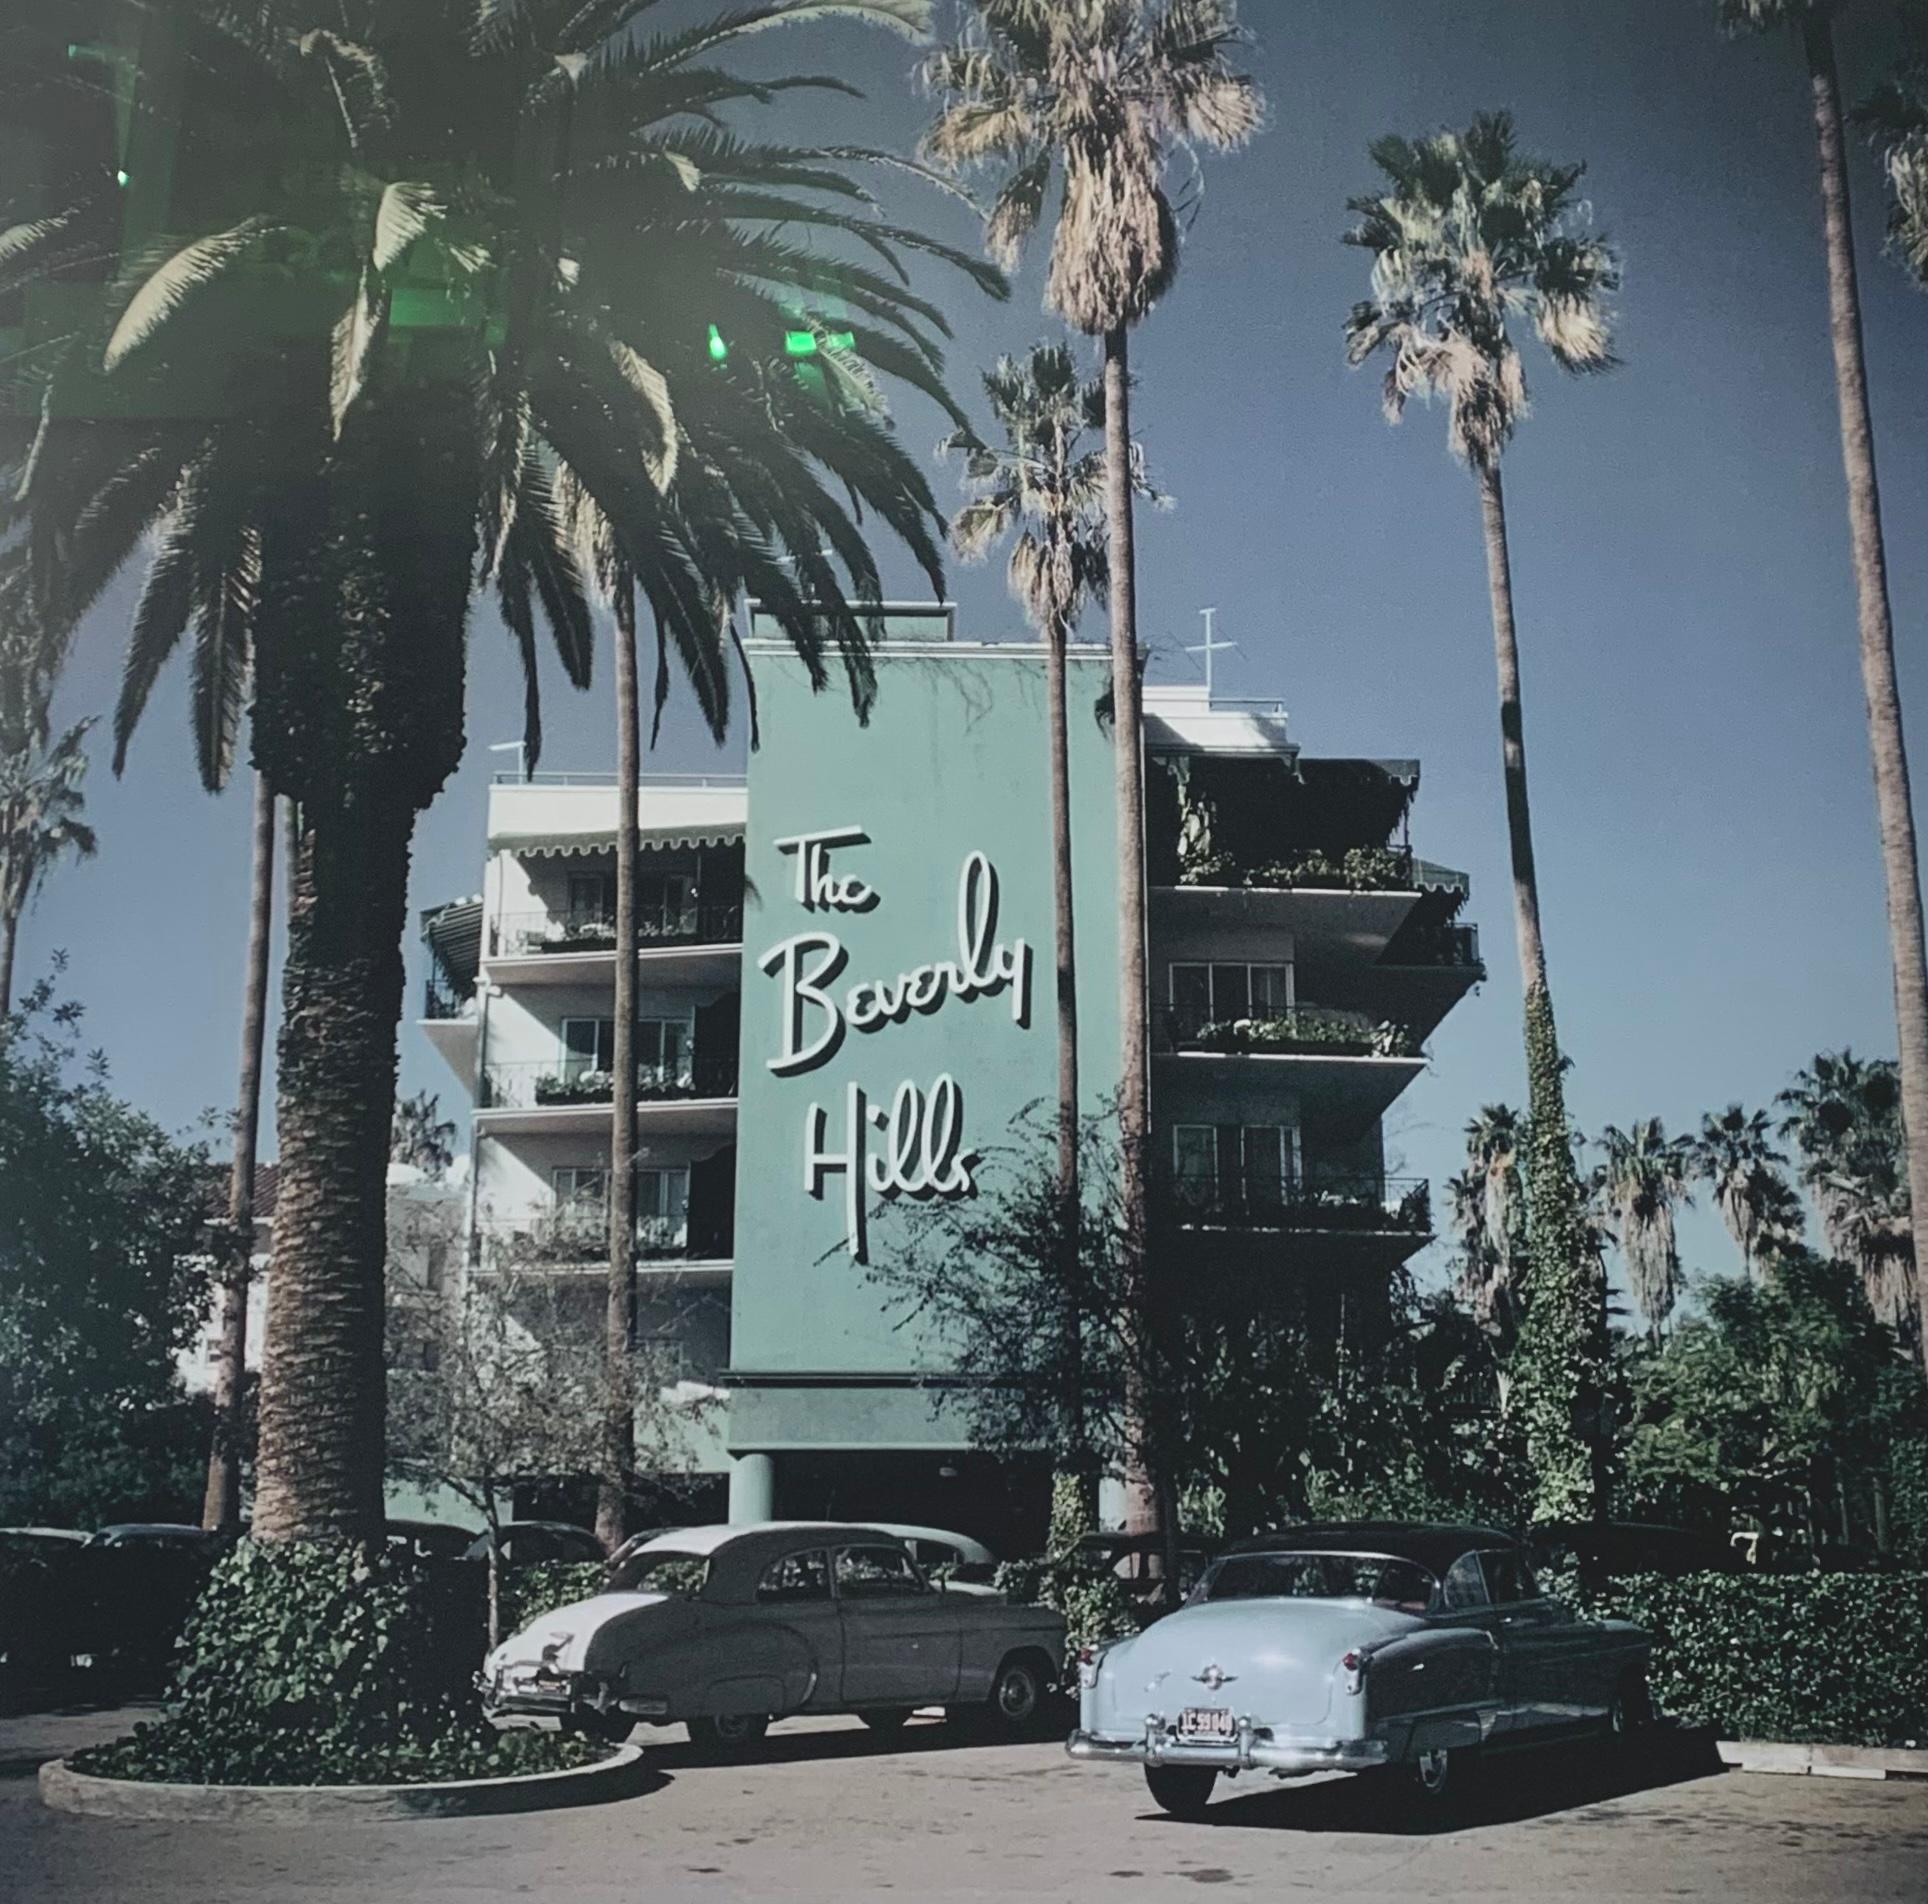 "Beverly Hills Hotel" von Slim Aarons 

Vor dem Beverly Hills Hotel am Sunset Boulevard in Kalifornien geparkte Autos, 1957. (Foto: Slim Aarons)

Slim Aarons (geboren als George Allen Aarons; 29. Oktober 1916 - 30. Mai 2006) war ein amerikanischer